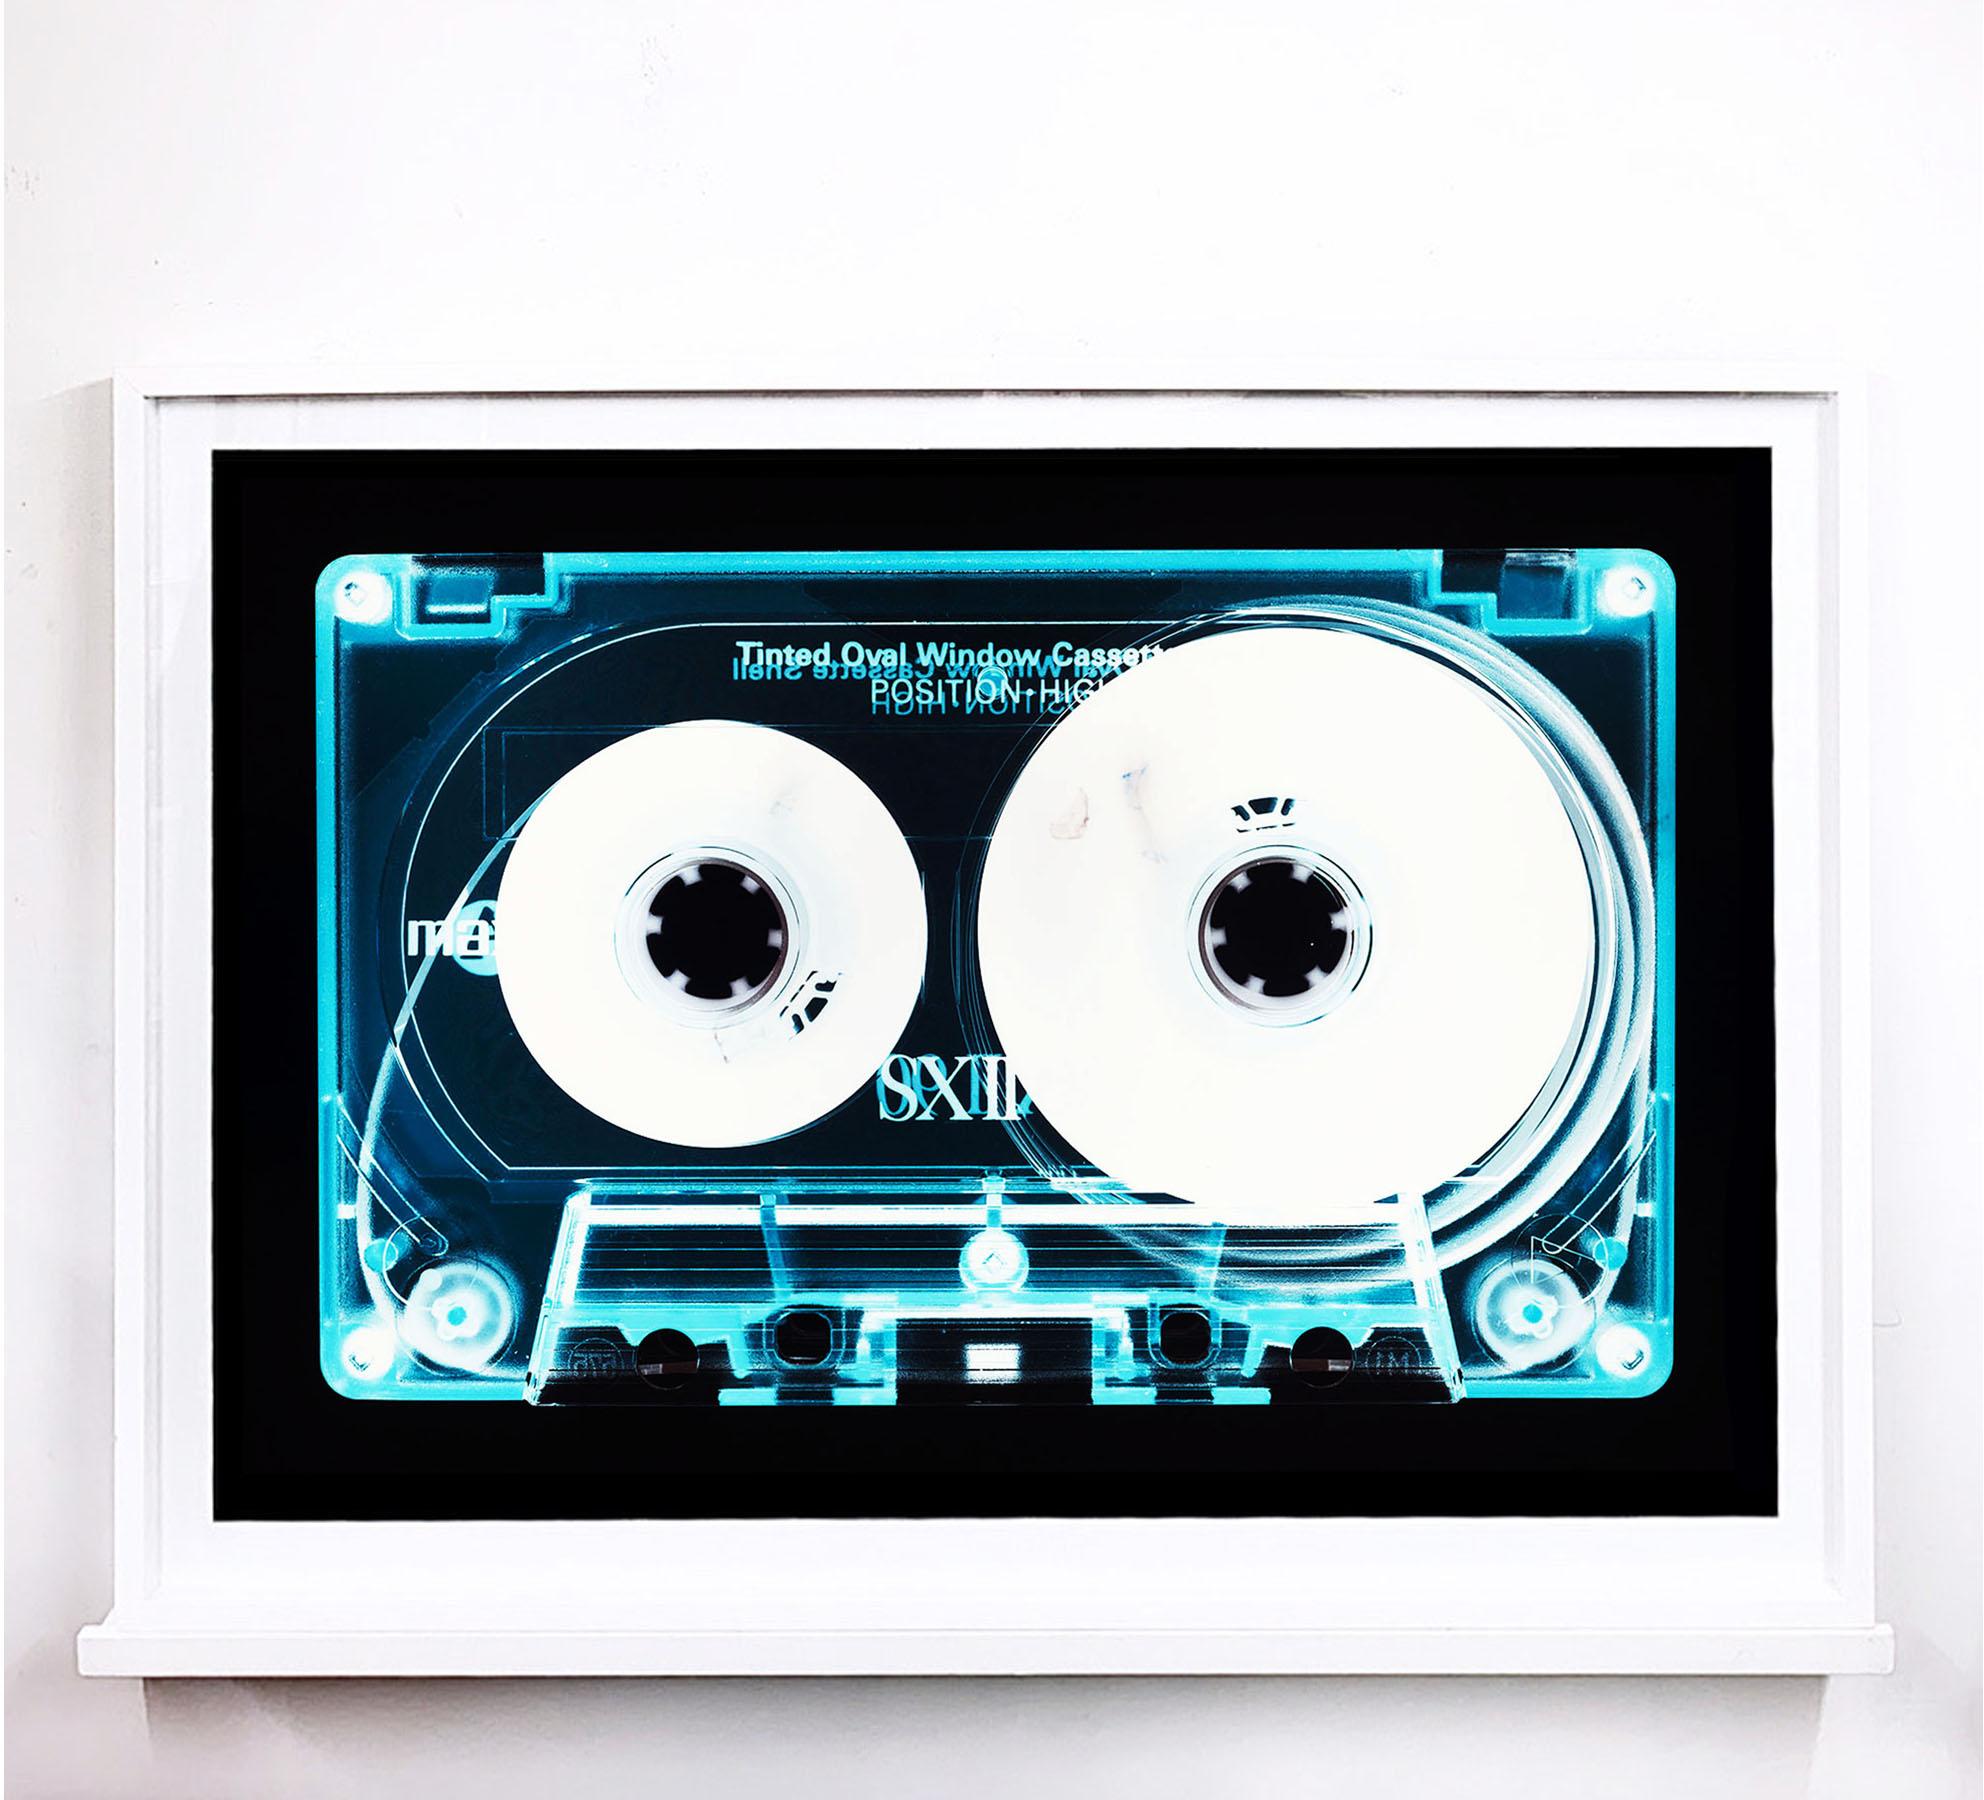 Collection de tapisserie - Cassette de fenêtre ovale teintée - Music Pop Art conceptuel en couleurs - Gris Print par Heidler & Heeps